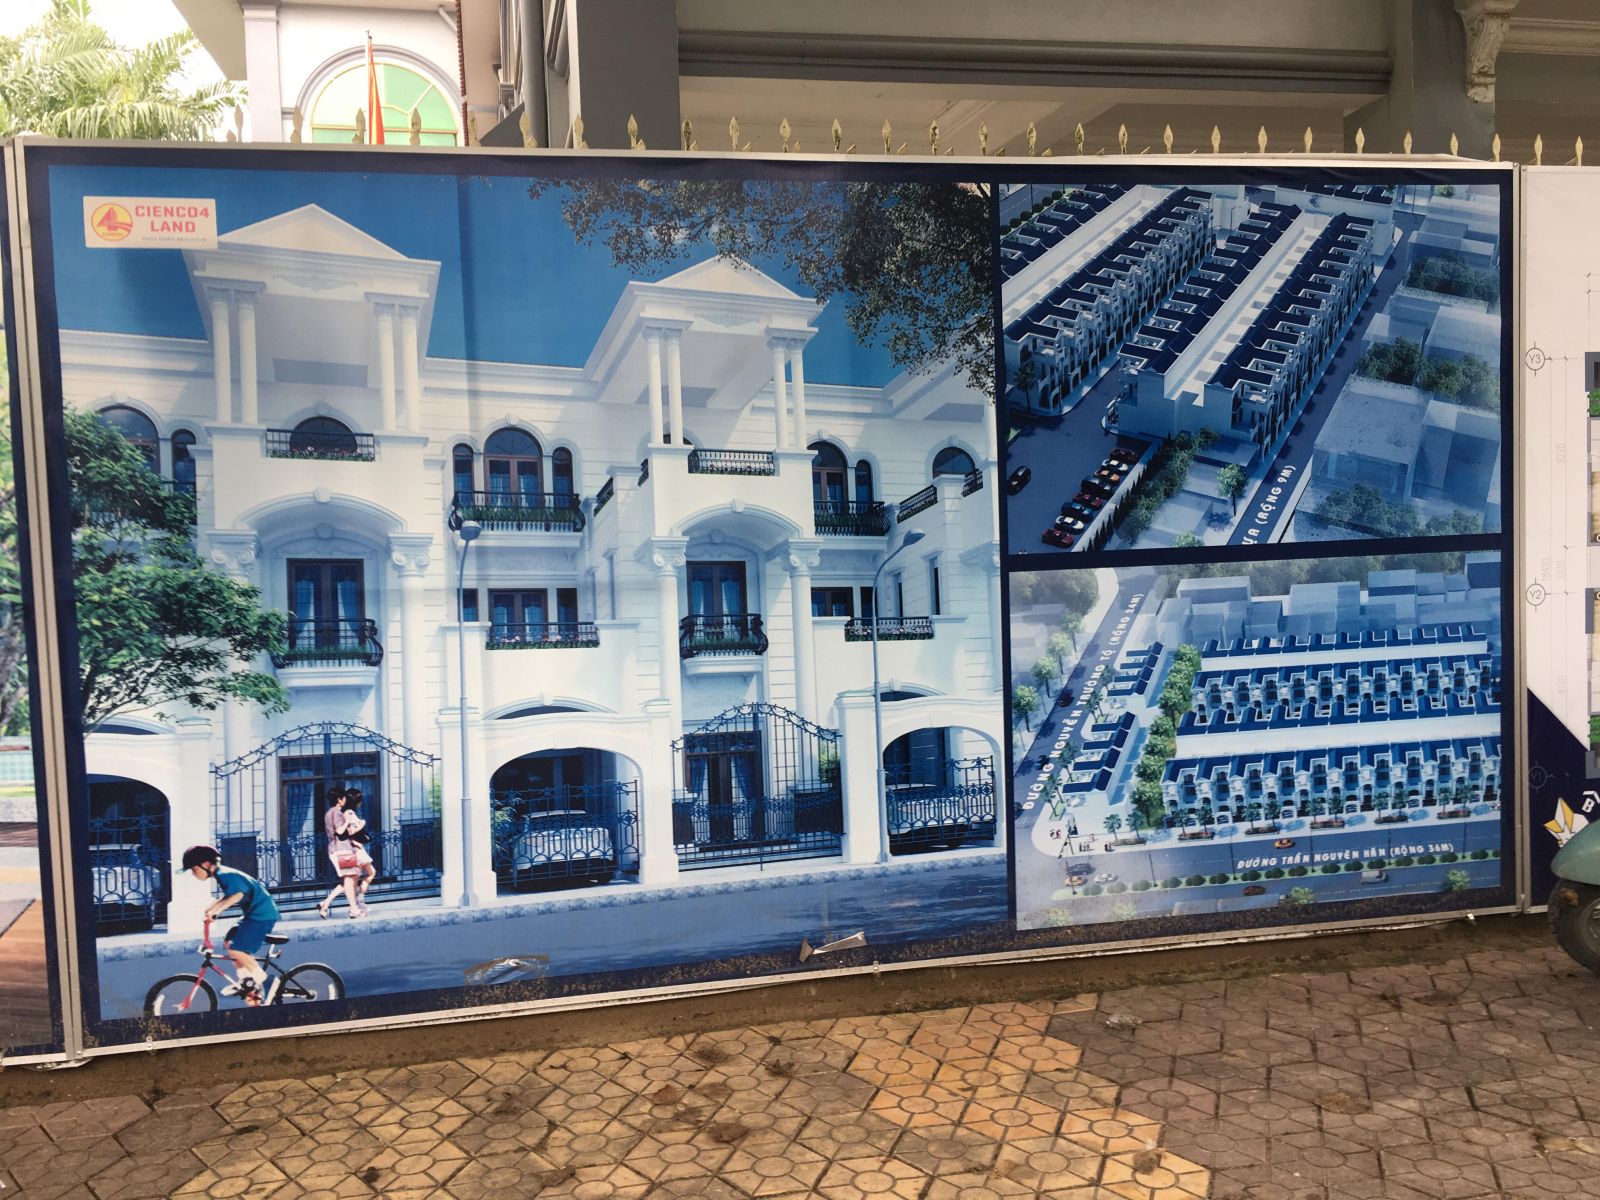 Dự án Khu dịch vụ thương mại, nhà ở và chung cư cao tầng được chủ đầu tư quảng cáo rùm beng trên     đường Nguyễn Trường Tộ